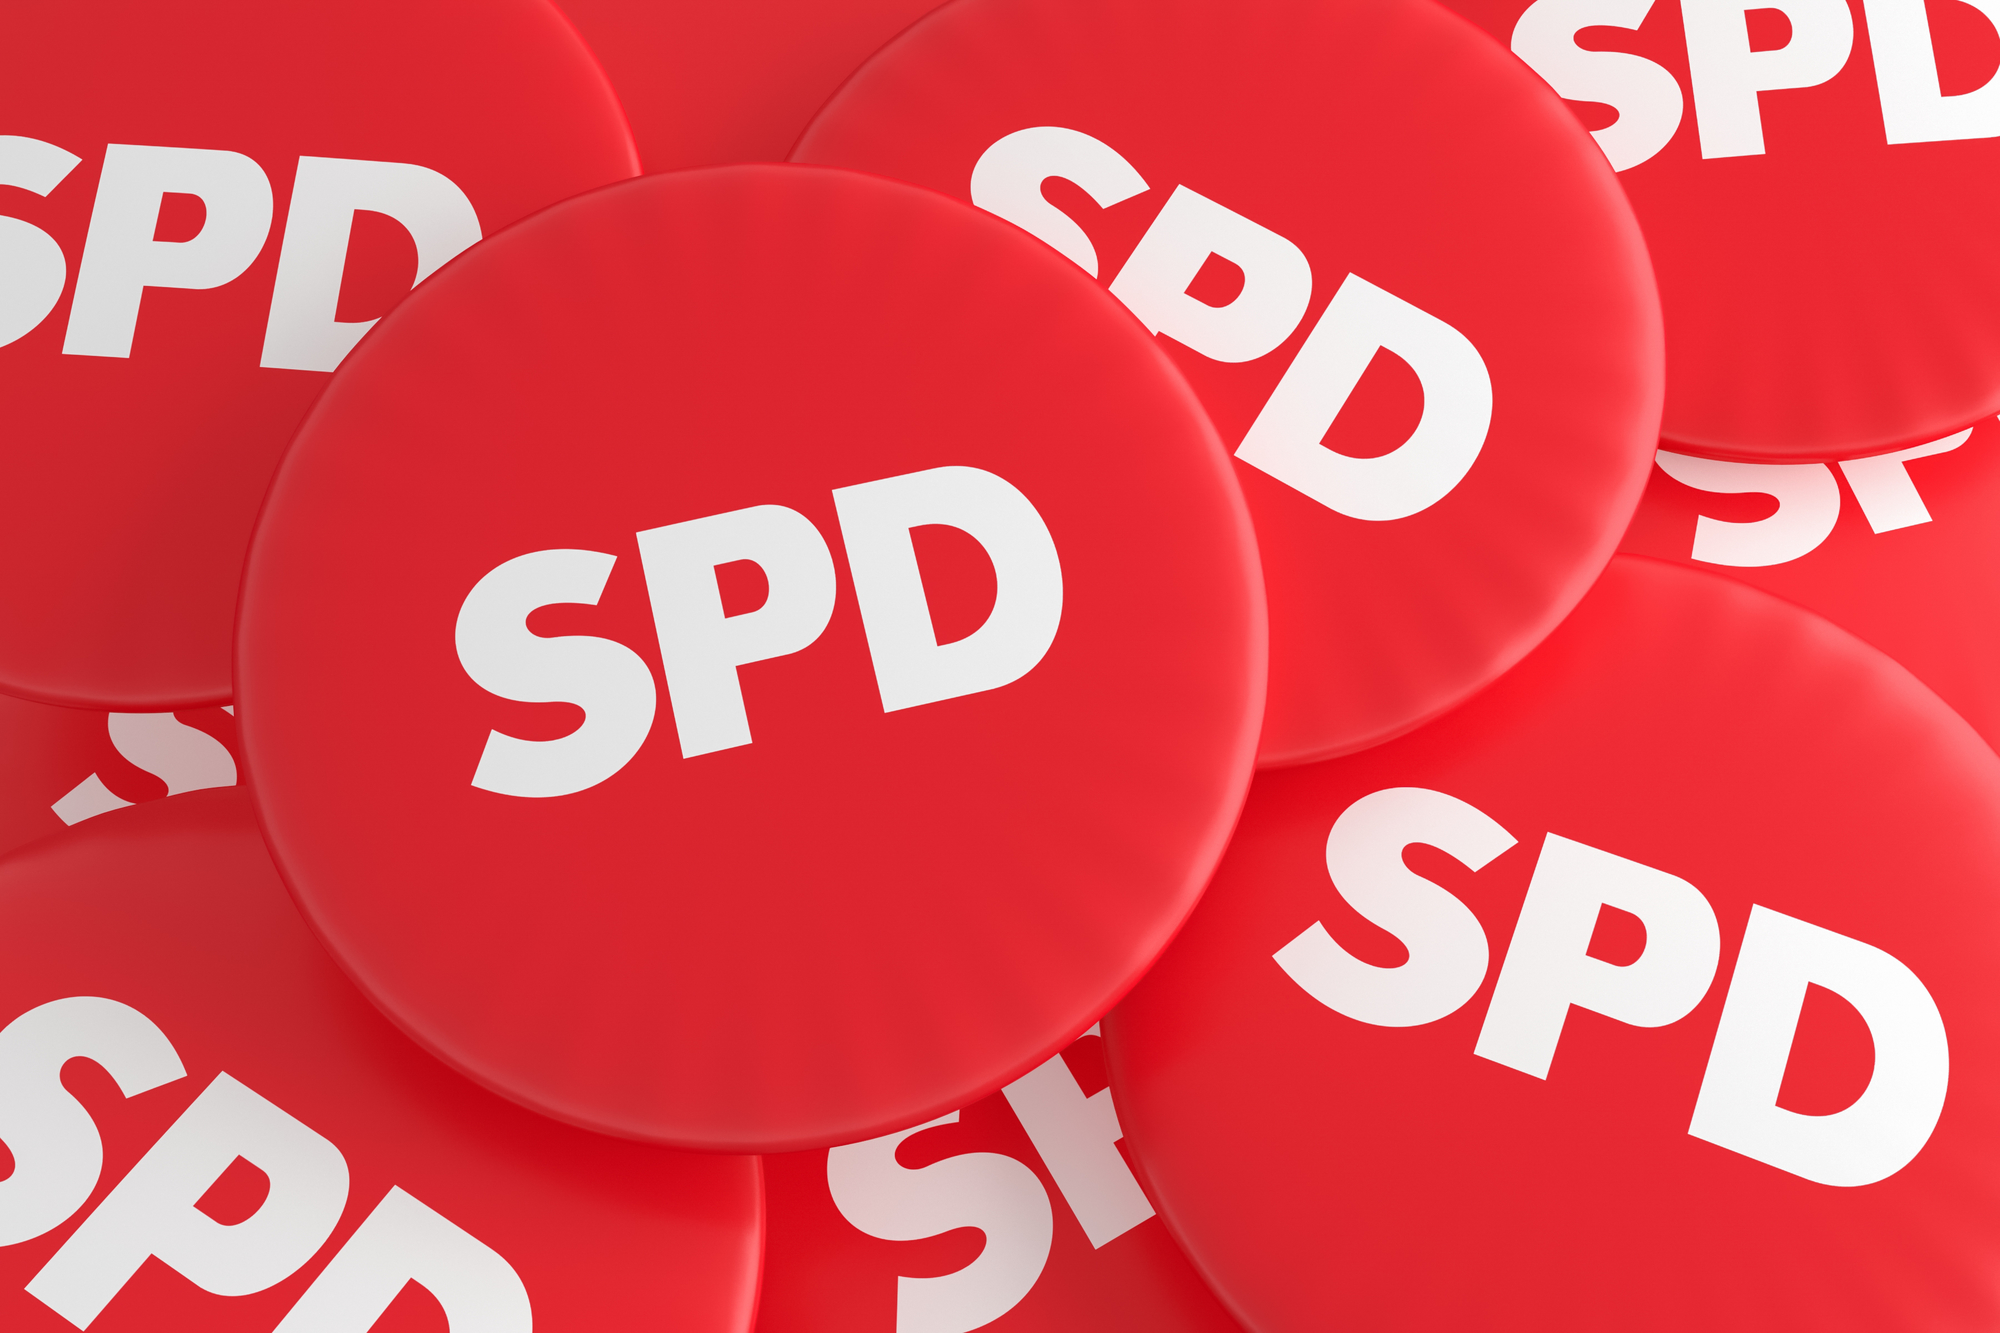 Második fordulót kell tartani a német szociáldemokraták elnökjelölő pártszavazásán